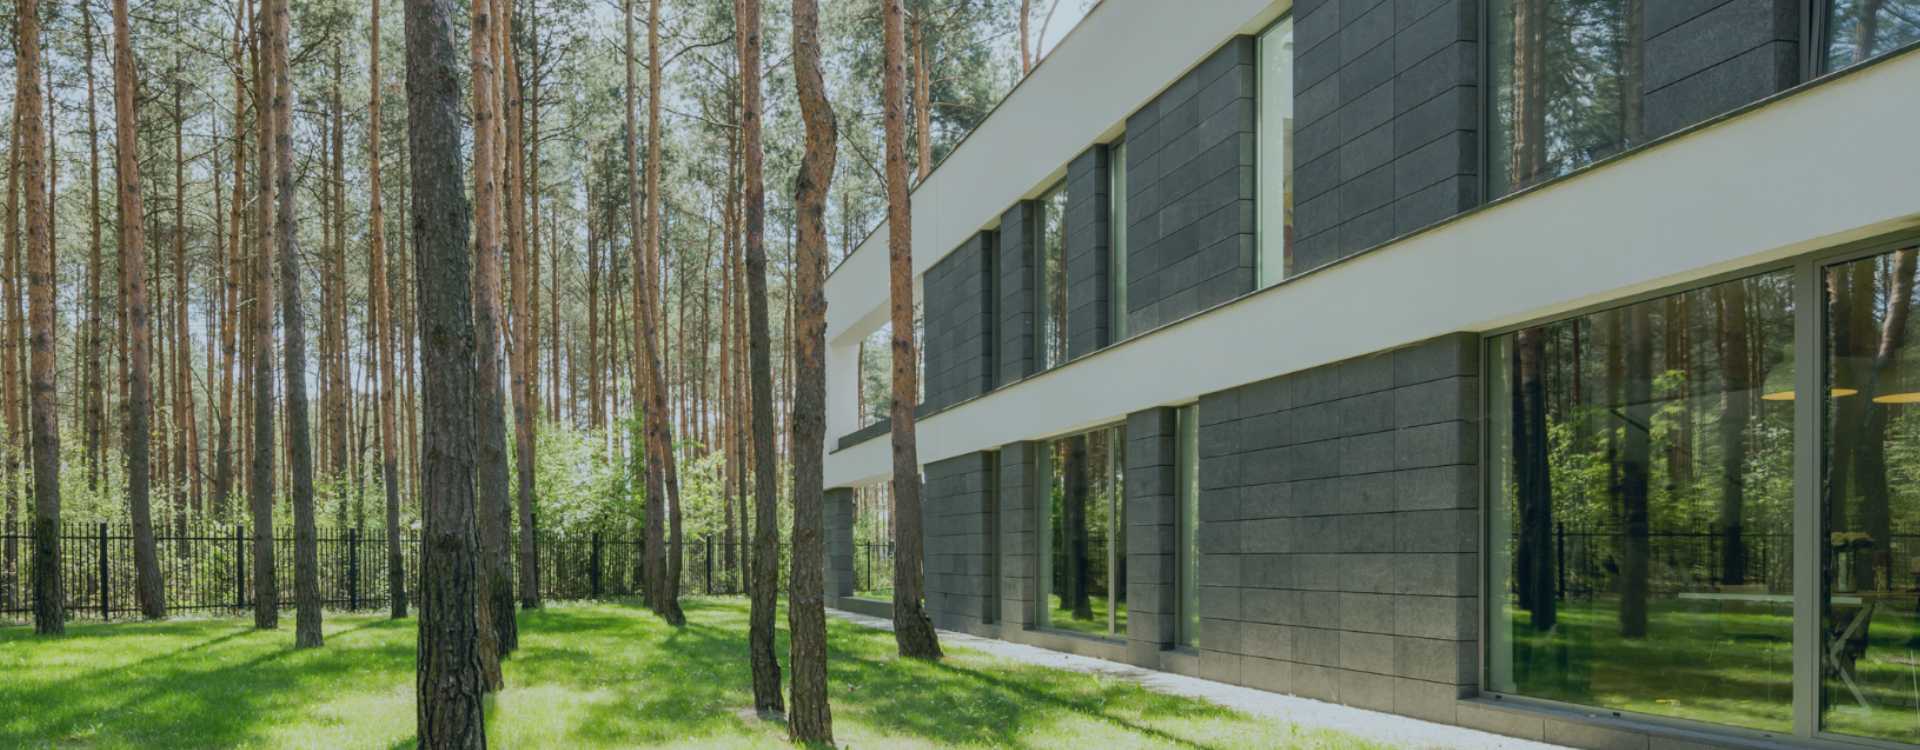 Moderner Neubau am Rande eines Waldes 